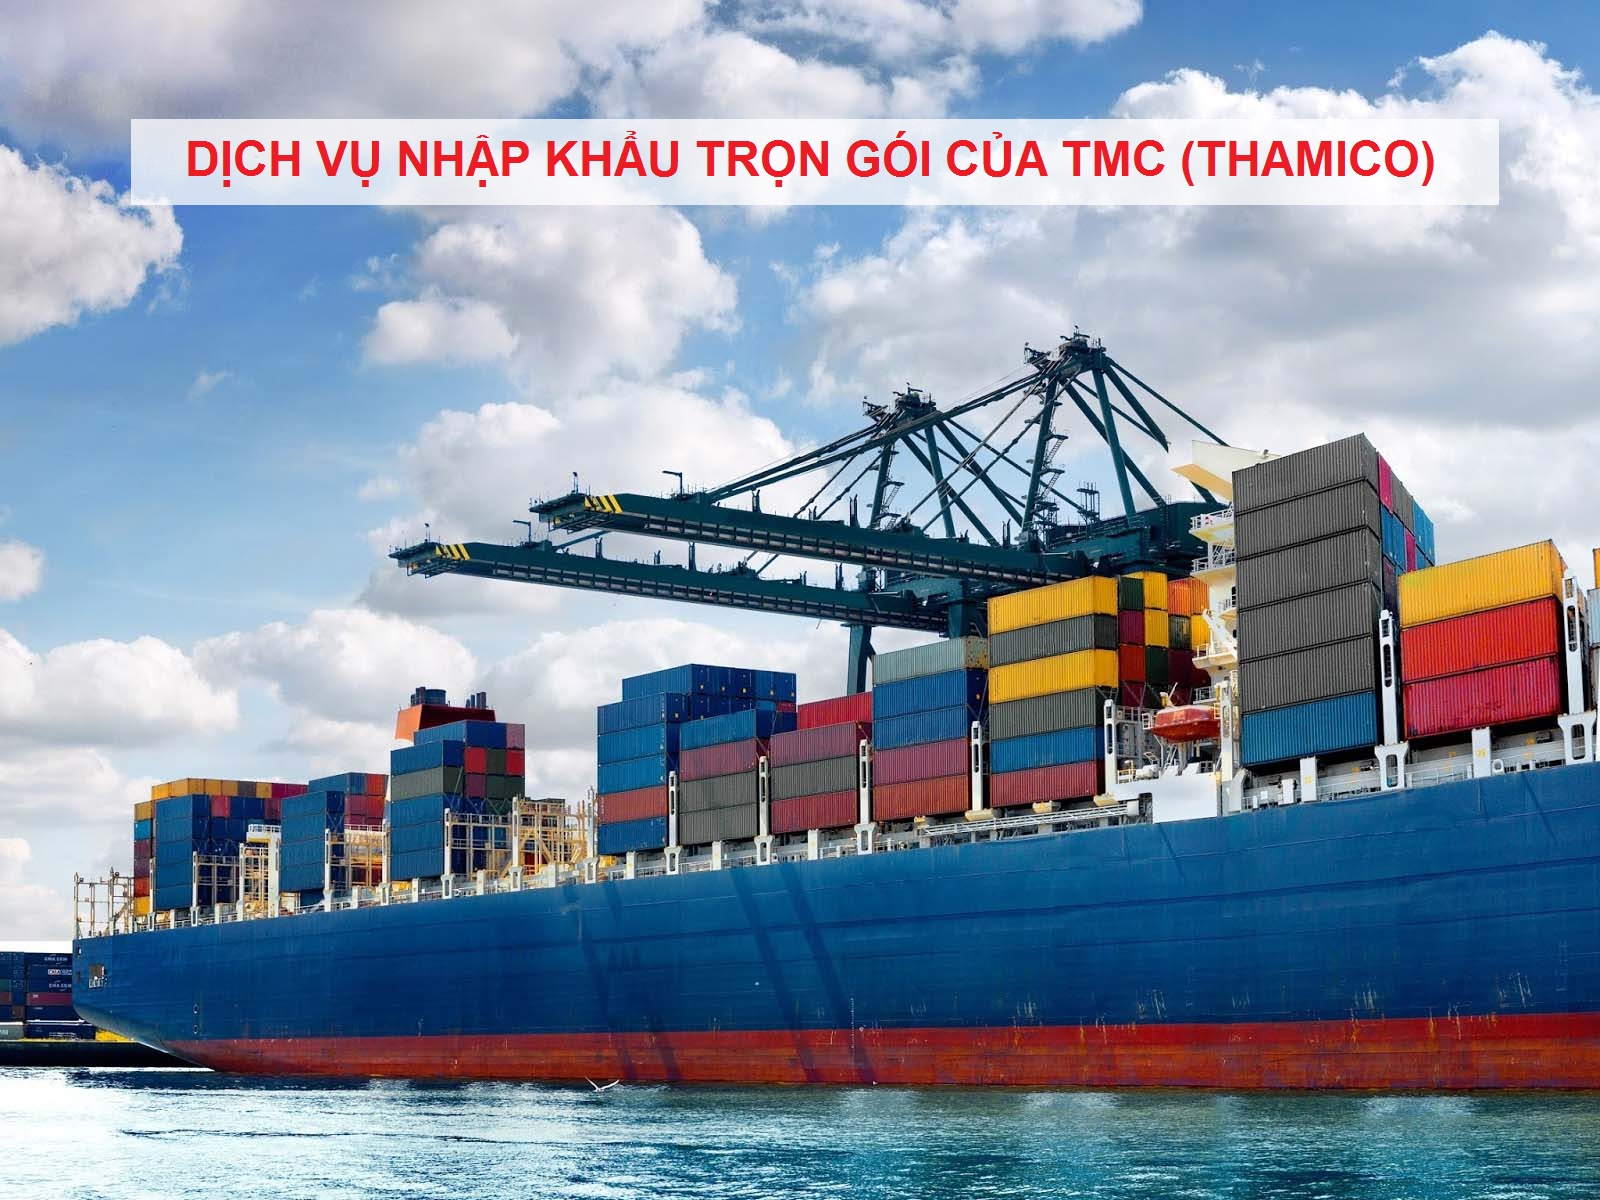 TMC cung cấp dịch vụ nhập khẩu trọn gói chuyên nghiệp